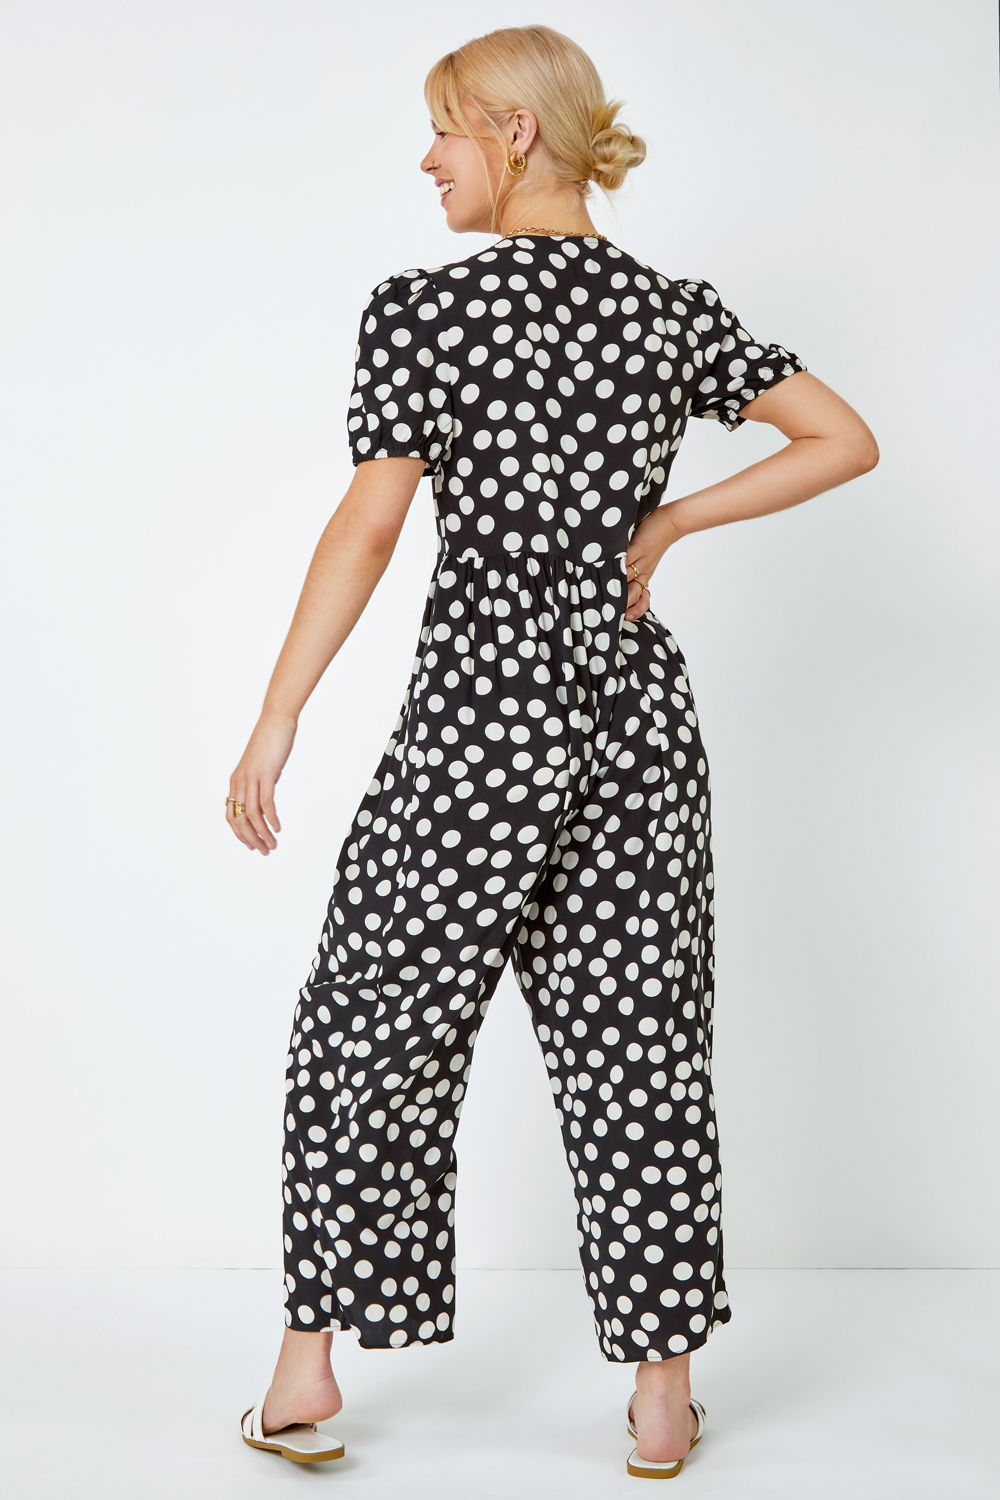 Black Polka Dot Print Culotte Jumpsuit, Image 3 of 5